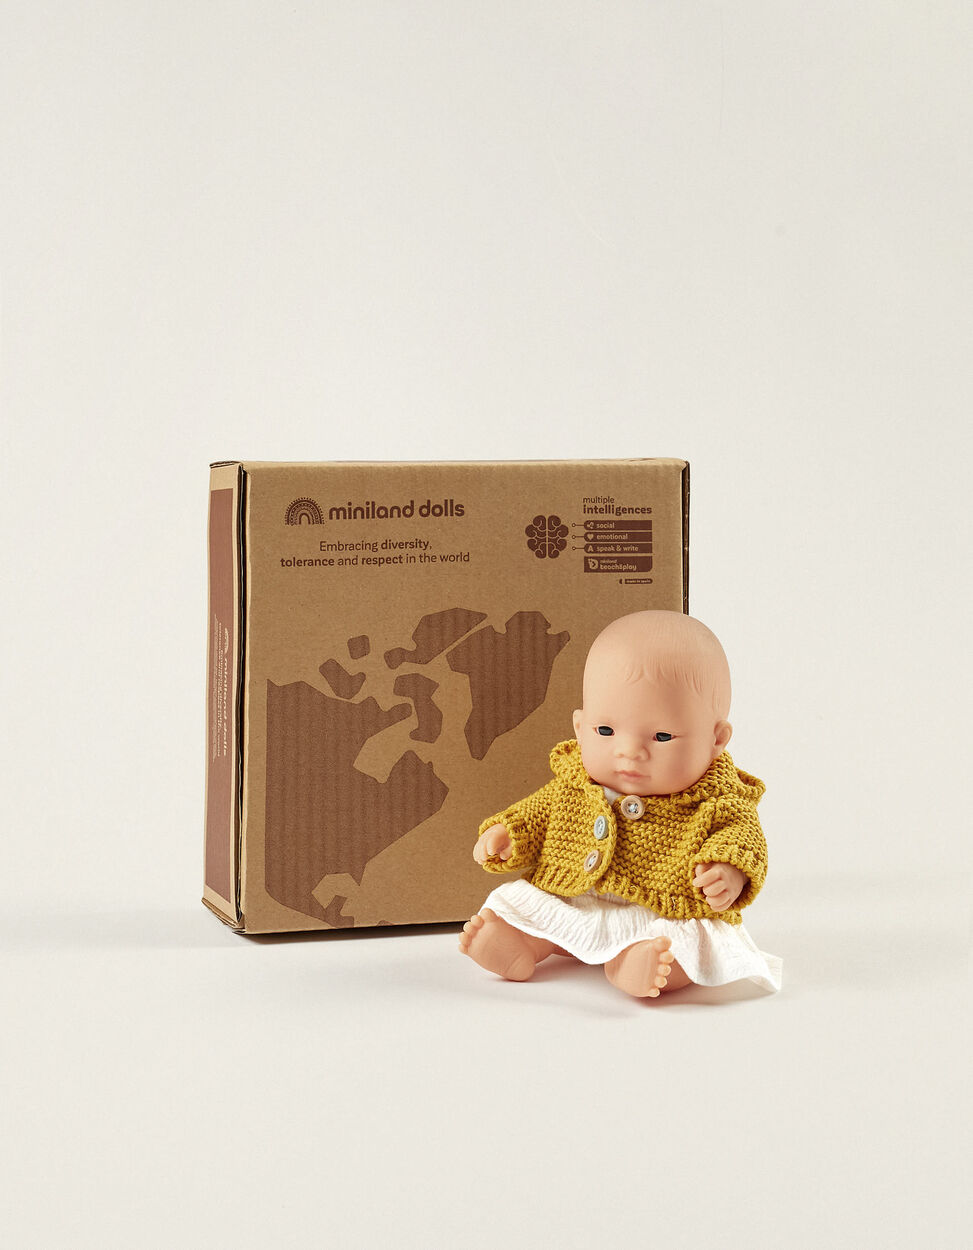 Boneca - Bebé Europeu Menino com Roupa - Oficina Didáctica